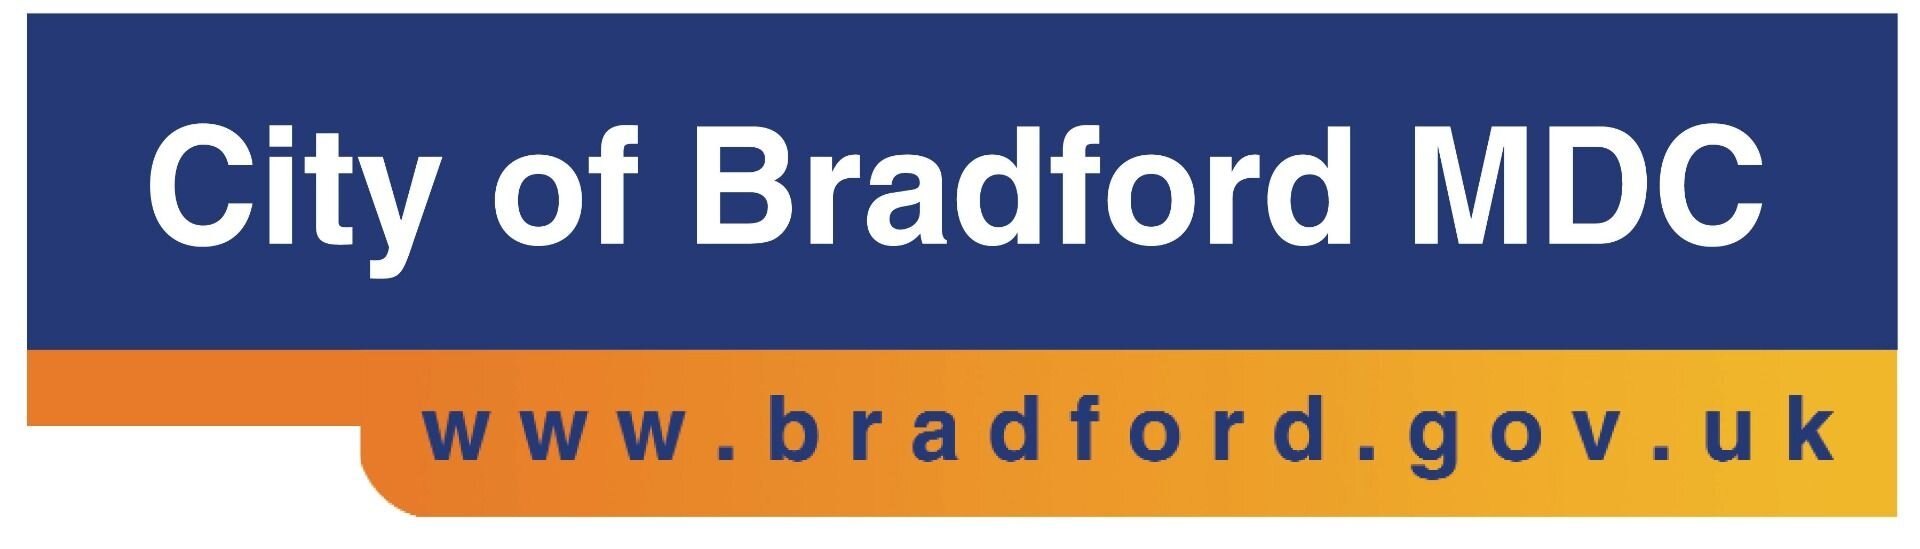 Bradford-logo.jpg